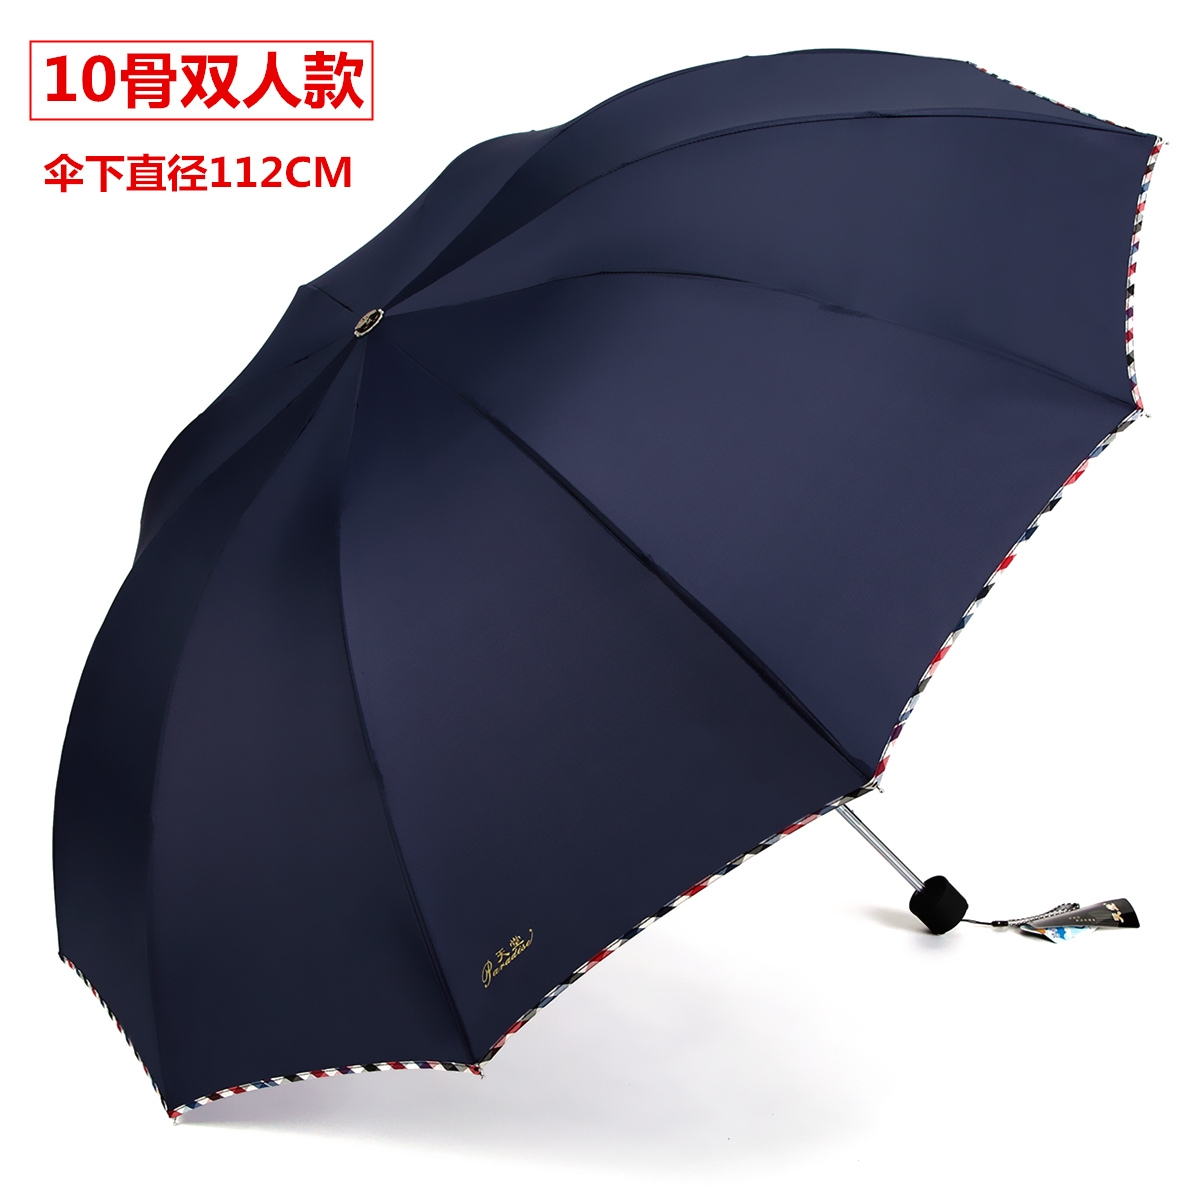 天堂伞超大男女双人晴雨伞三折叠加大两用防晒紫外线遮太阳伞